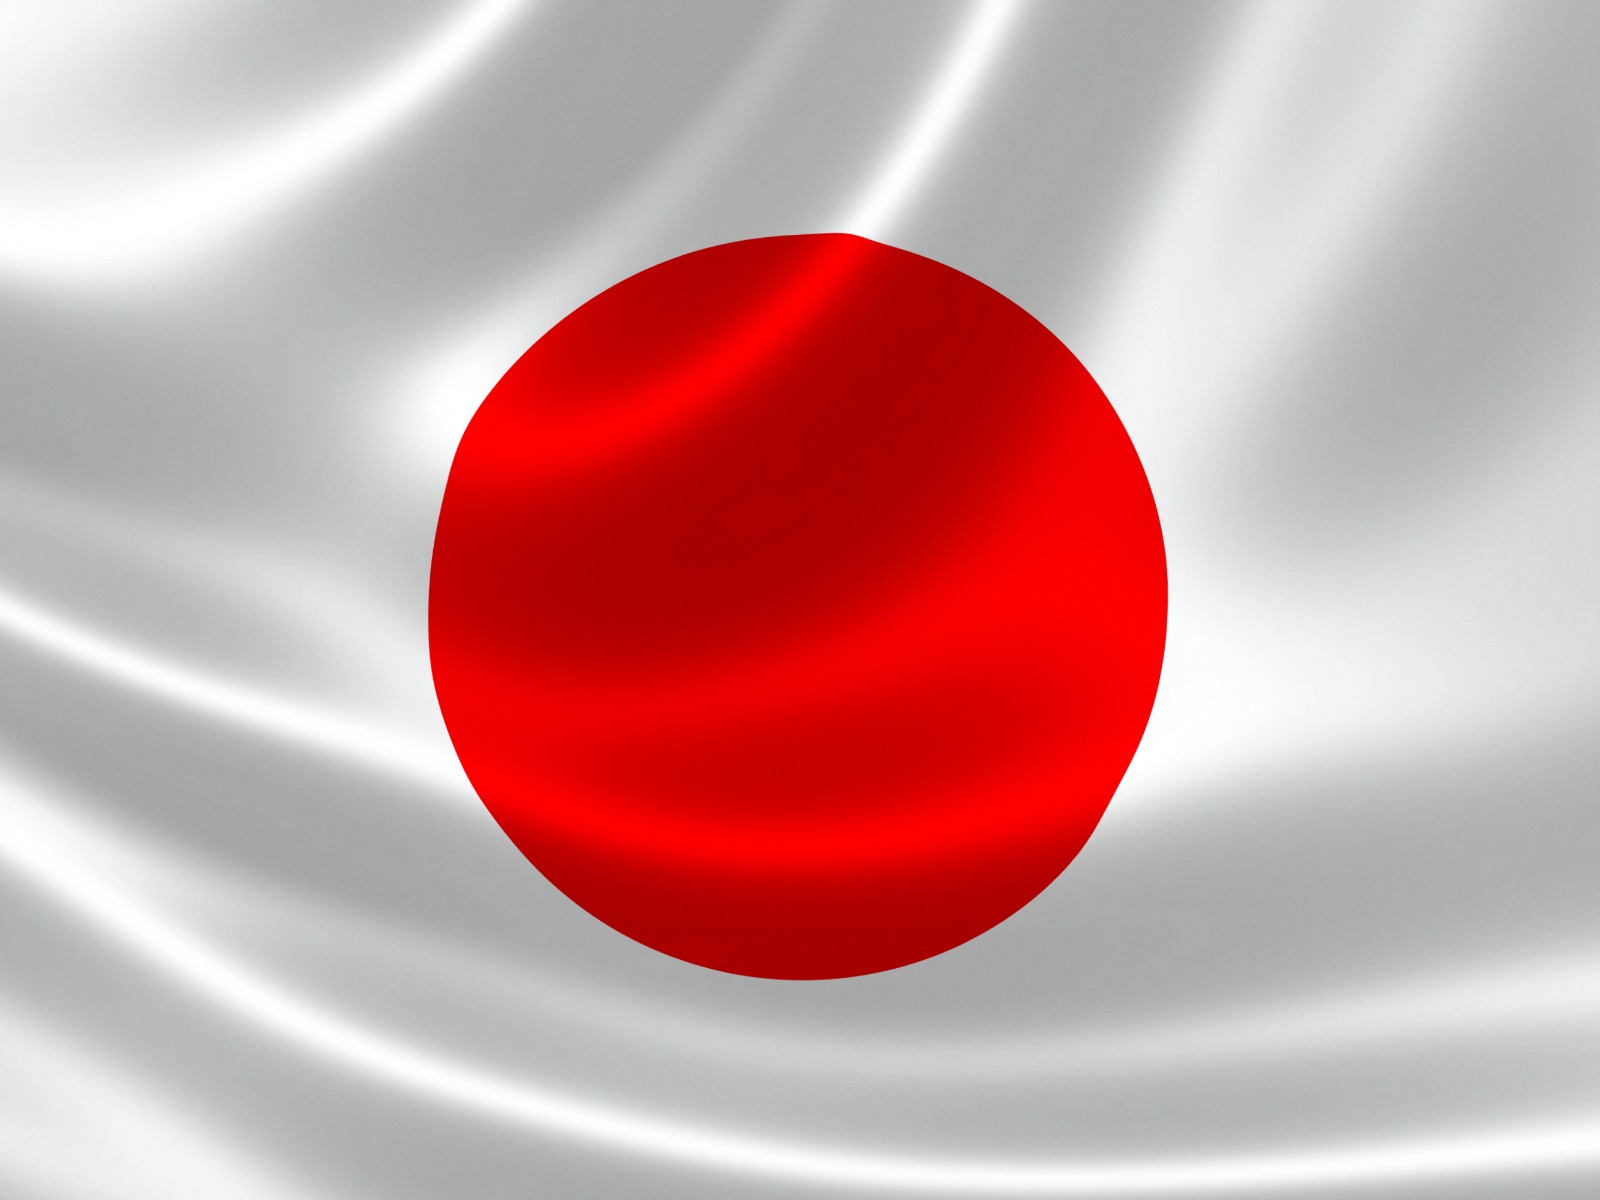 パラオ国旗の意味や由来 歴史から分かる日本との関係性を解説 パラオタイムス Palau Times